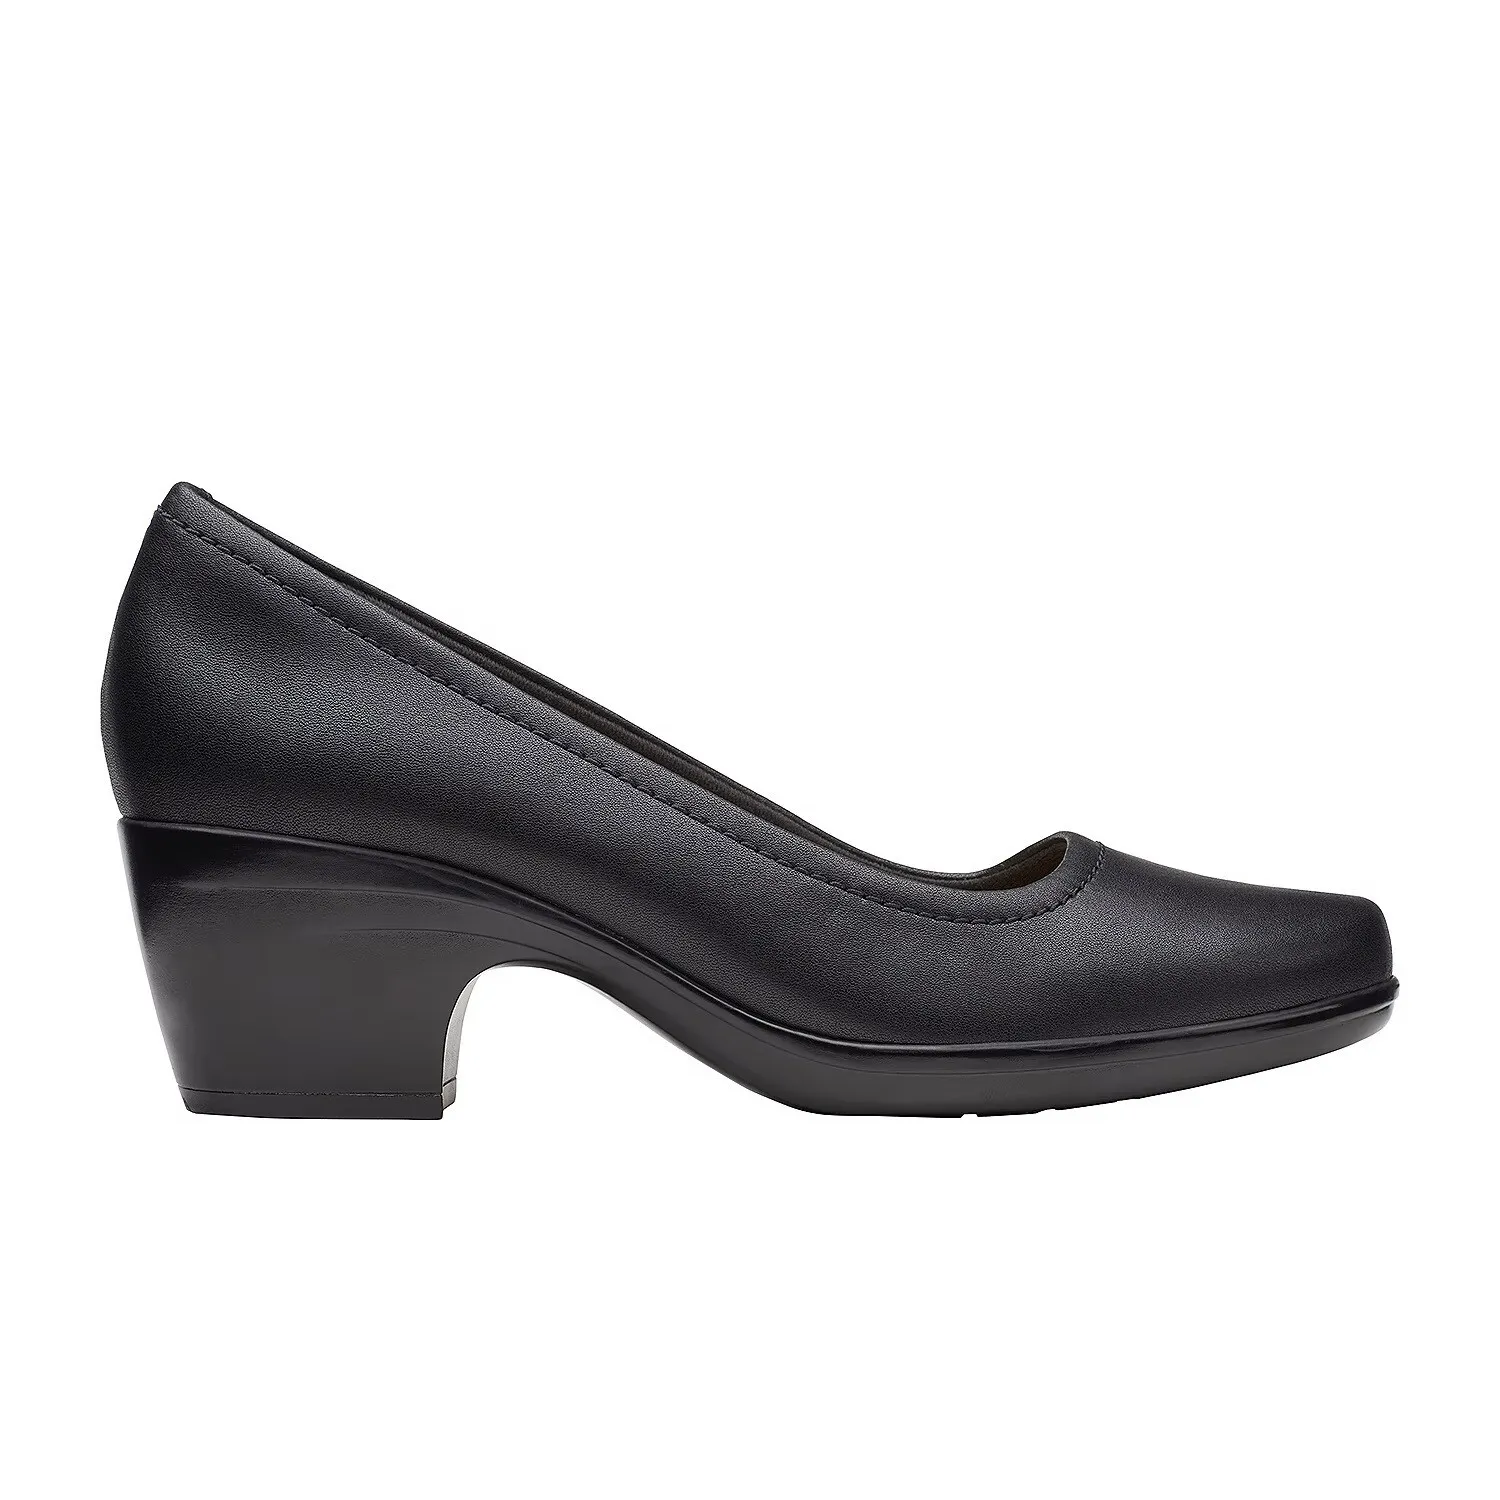 Женские туфли-лодочки Clarks, черные, цвет черный, размер 37 - фото 3